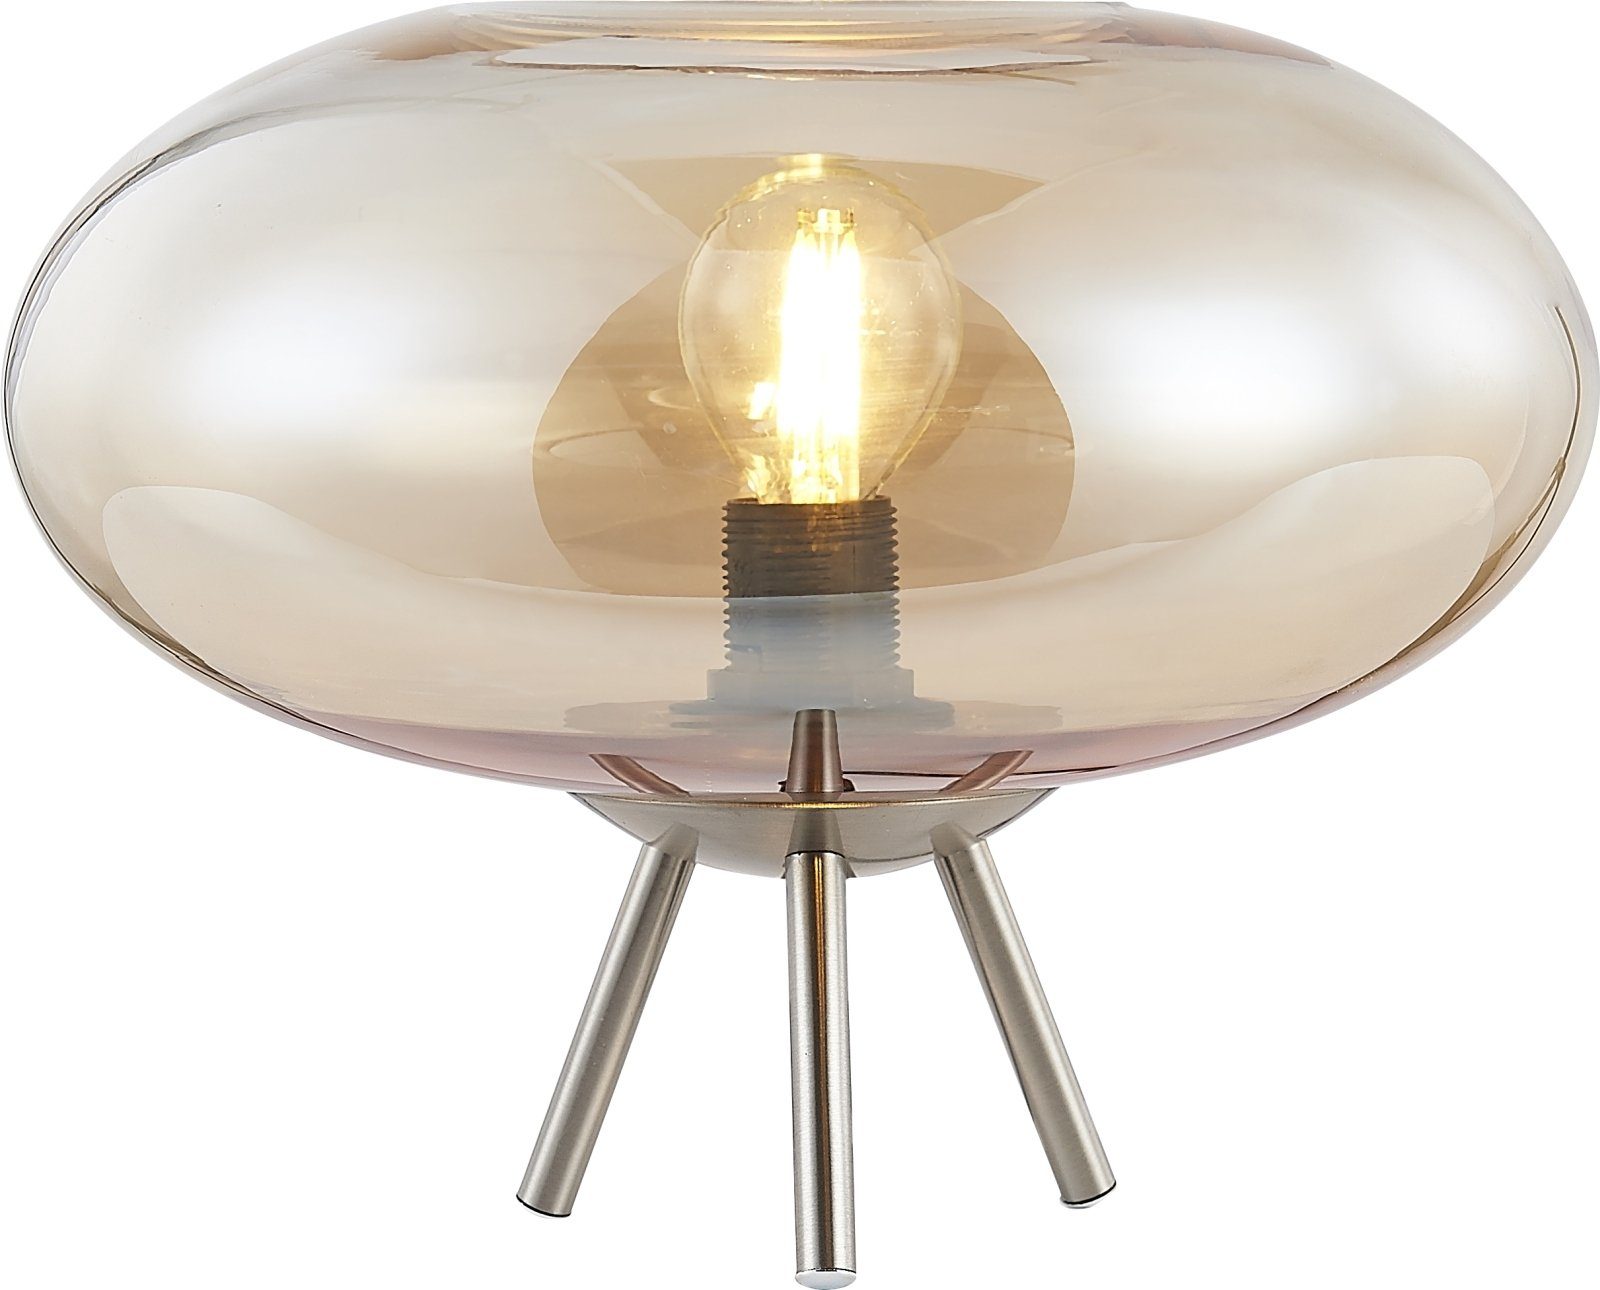 Nino Leuchten Glas Metall Tischlampe Wohnzimmer Tischleuchte bmf-versand Dreibein Tischleuchte